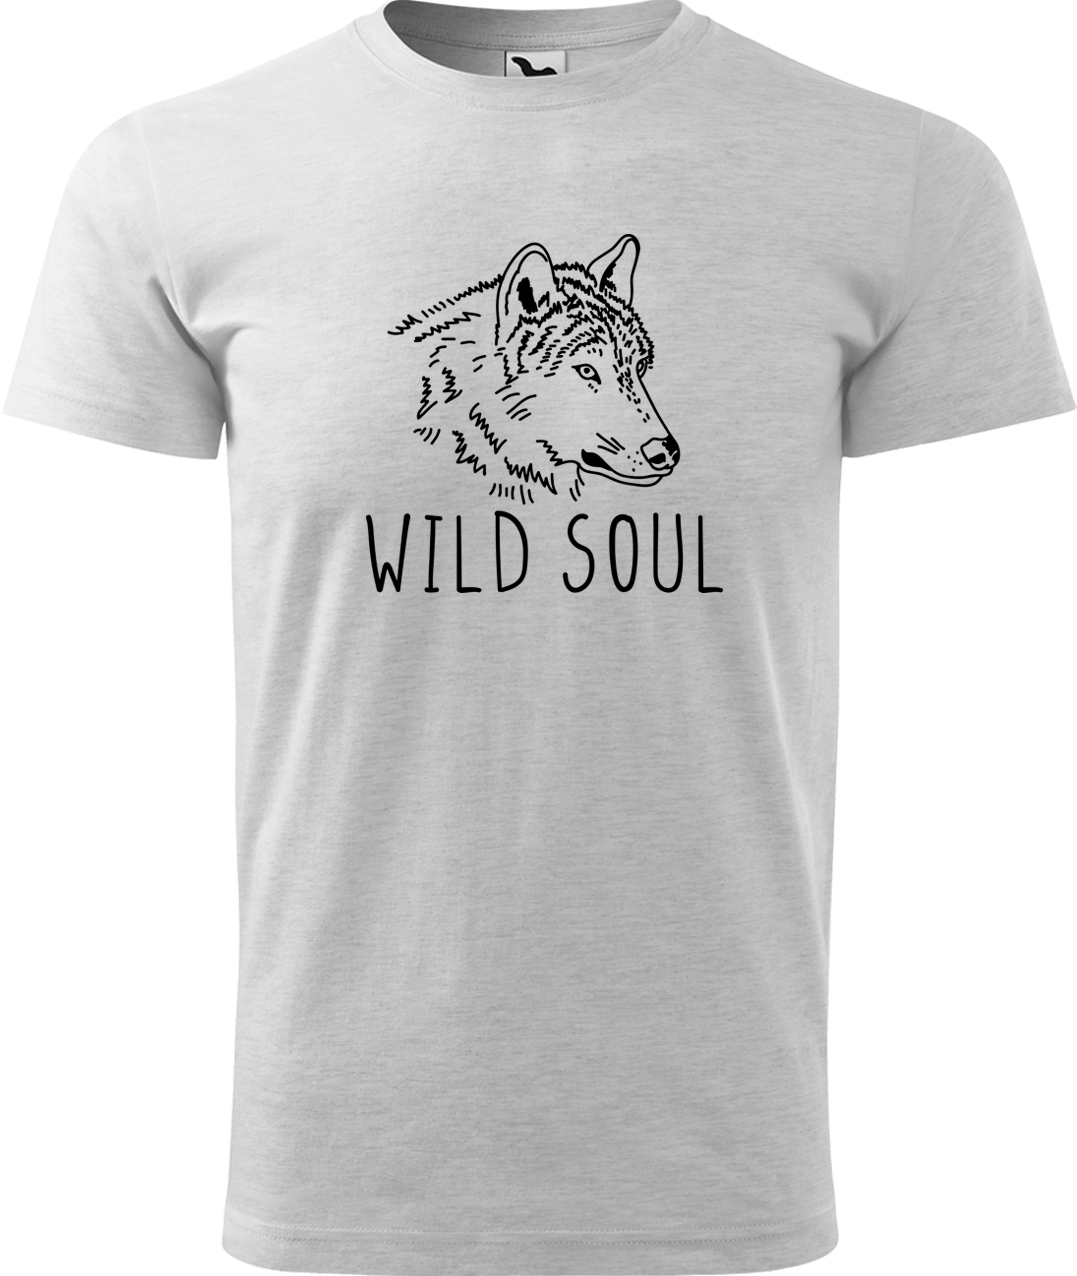 Pánské tričko s vlkem - Wild soul Velikost: M, Barva: Světle šedý melír (03), Střih: pánský